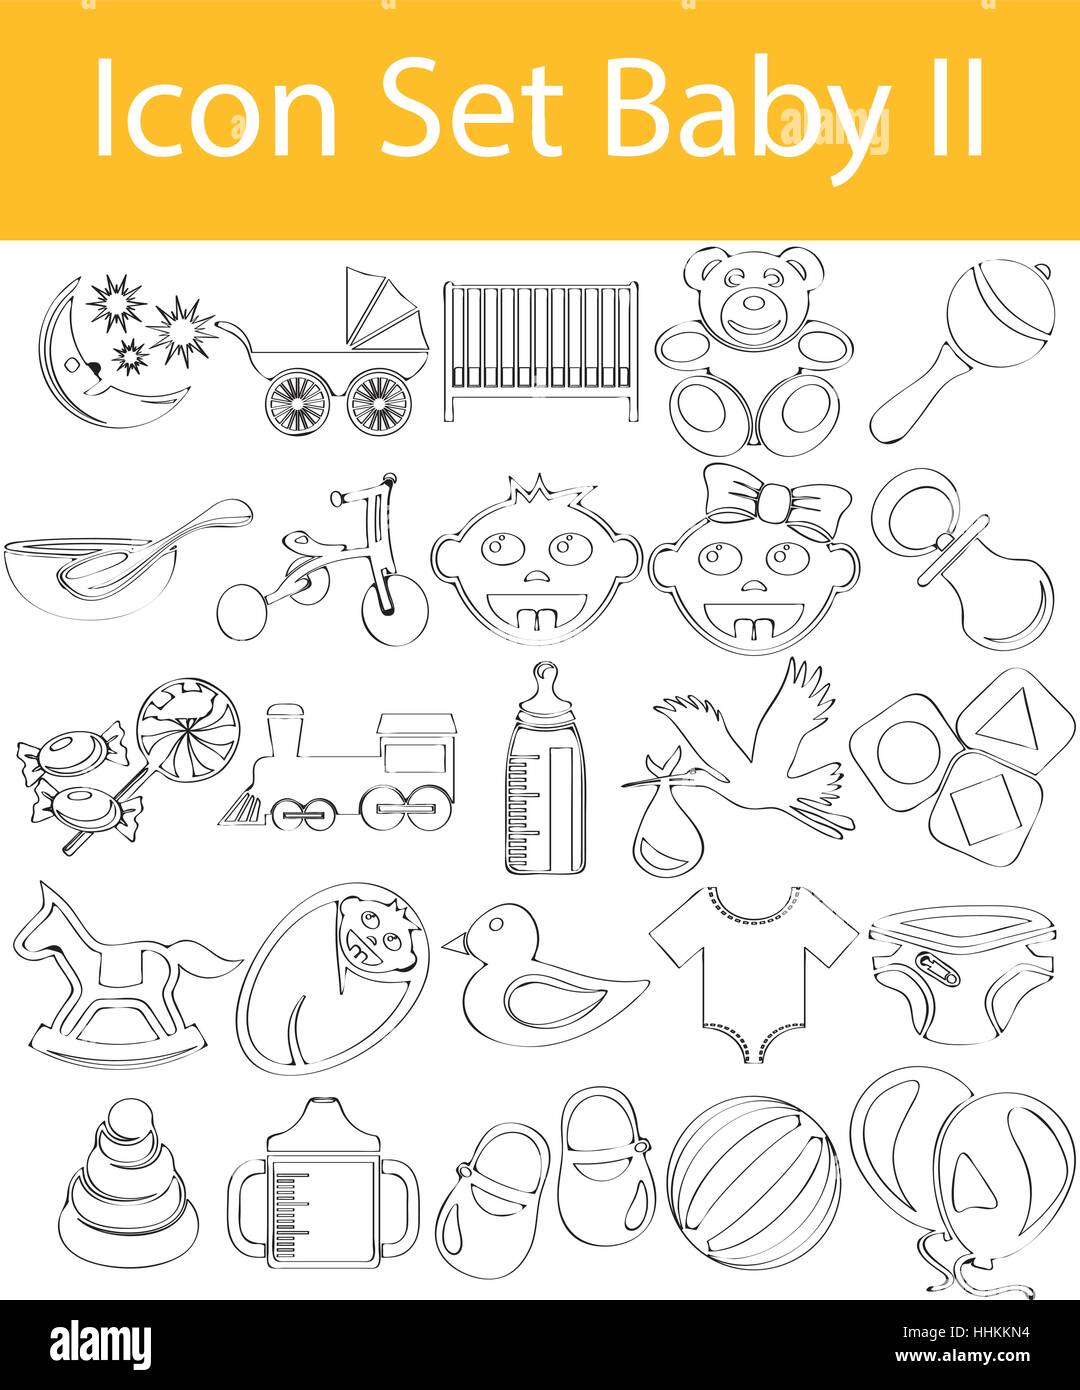 Gezeichnet von Doodle ausgekleidet Icon Set Baby II mit 25 Symbolen für den kreativen Einsatz in Grafik-design Stock Vektor